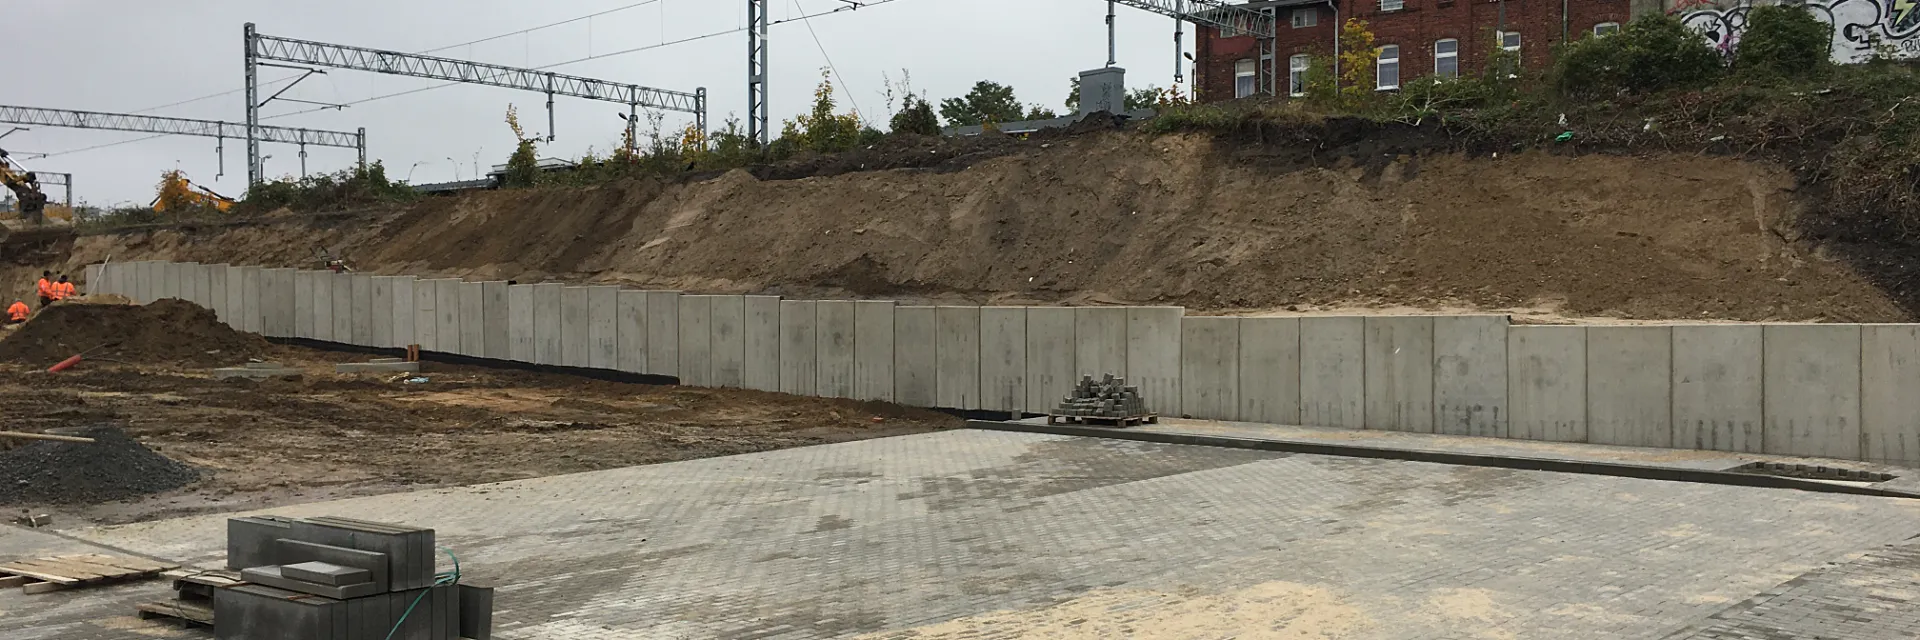 Mur oporowy prefabrykowany budowa w Szczecinie